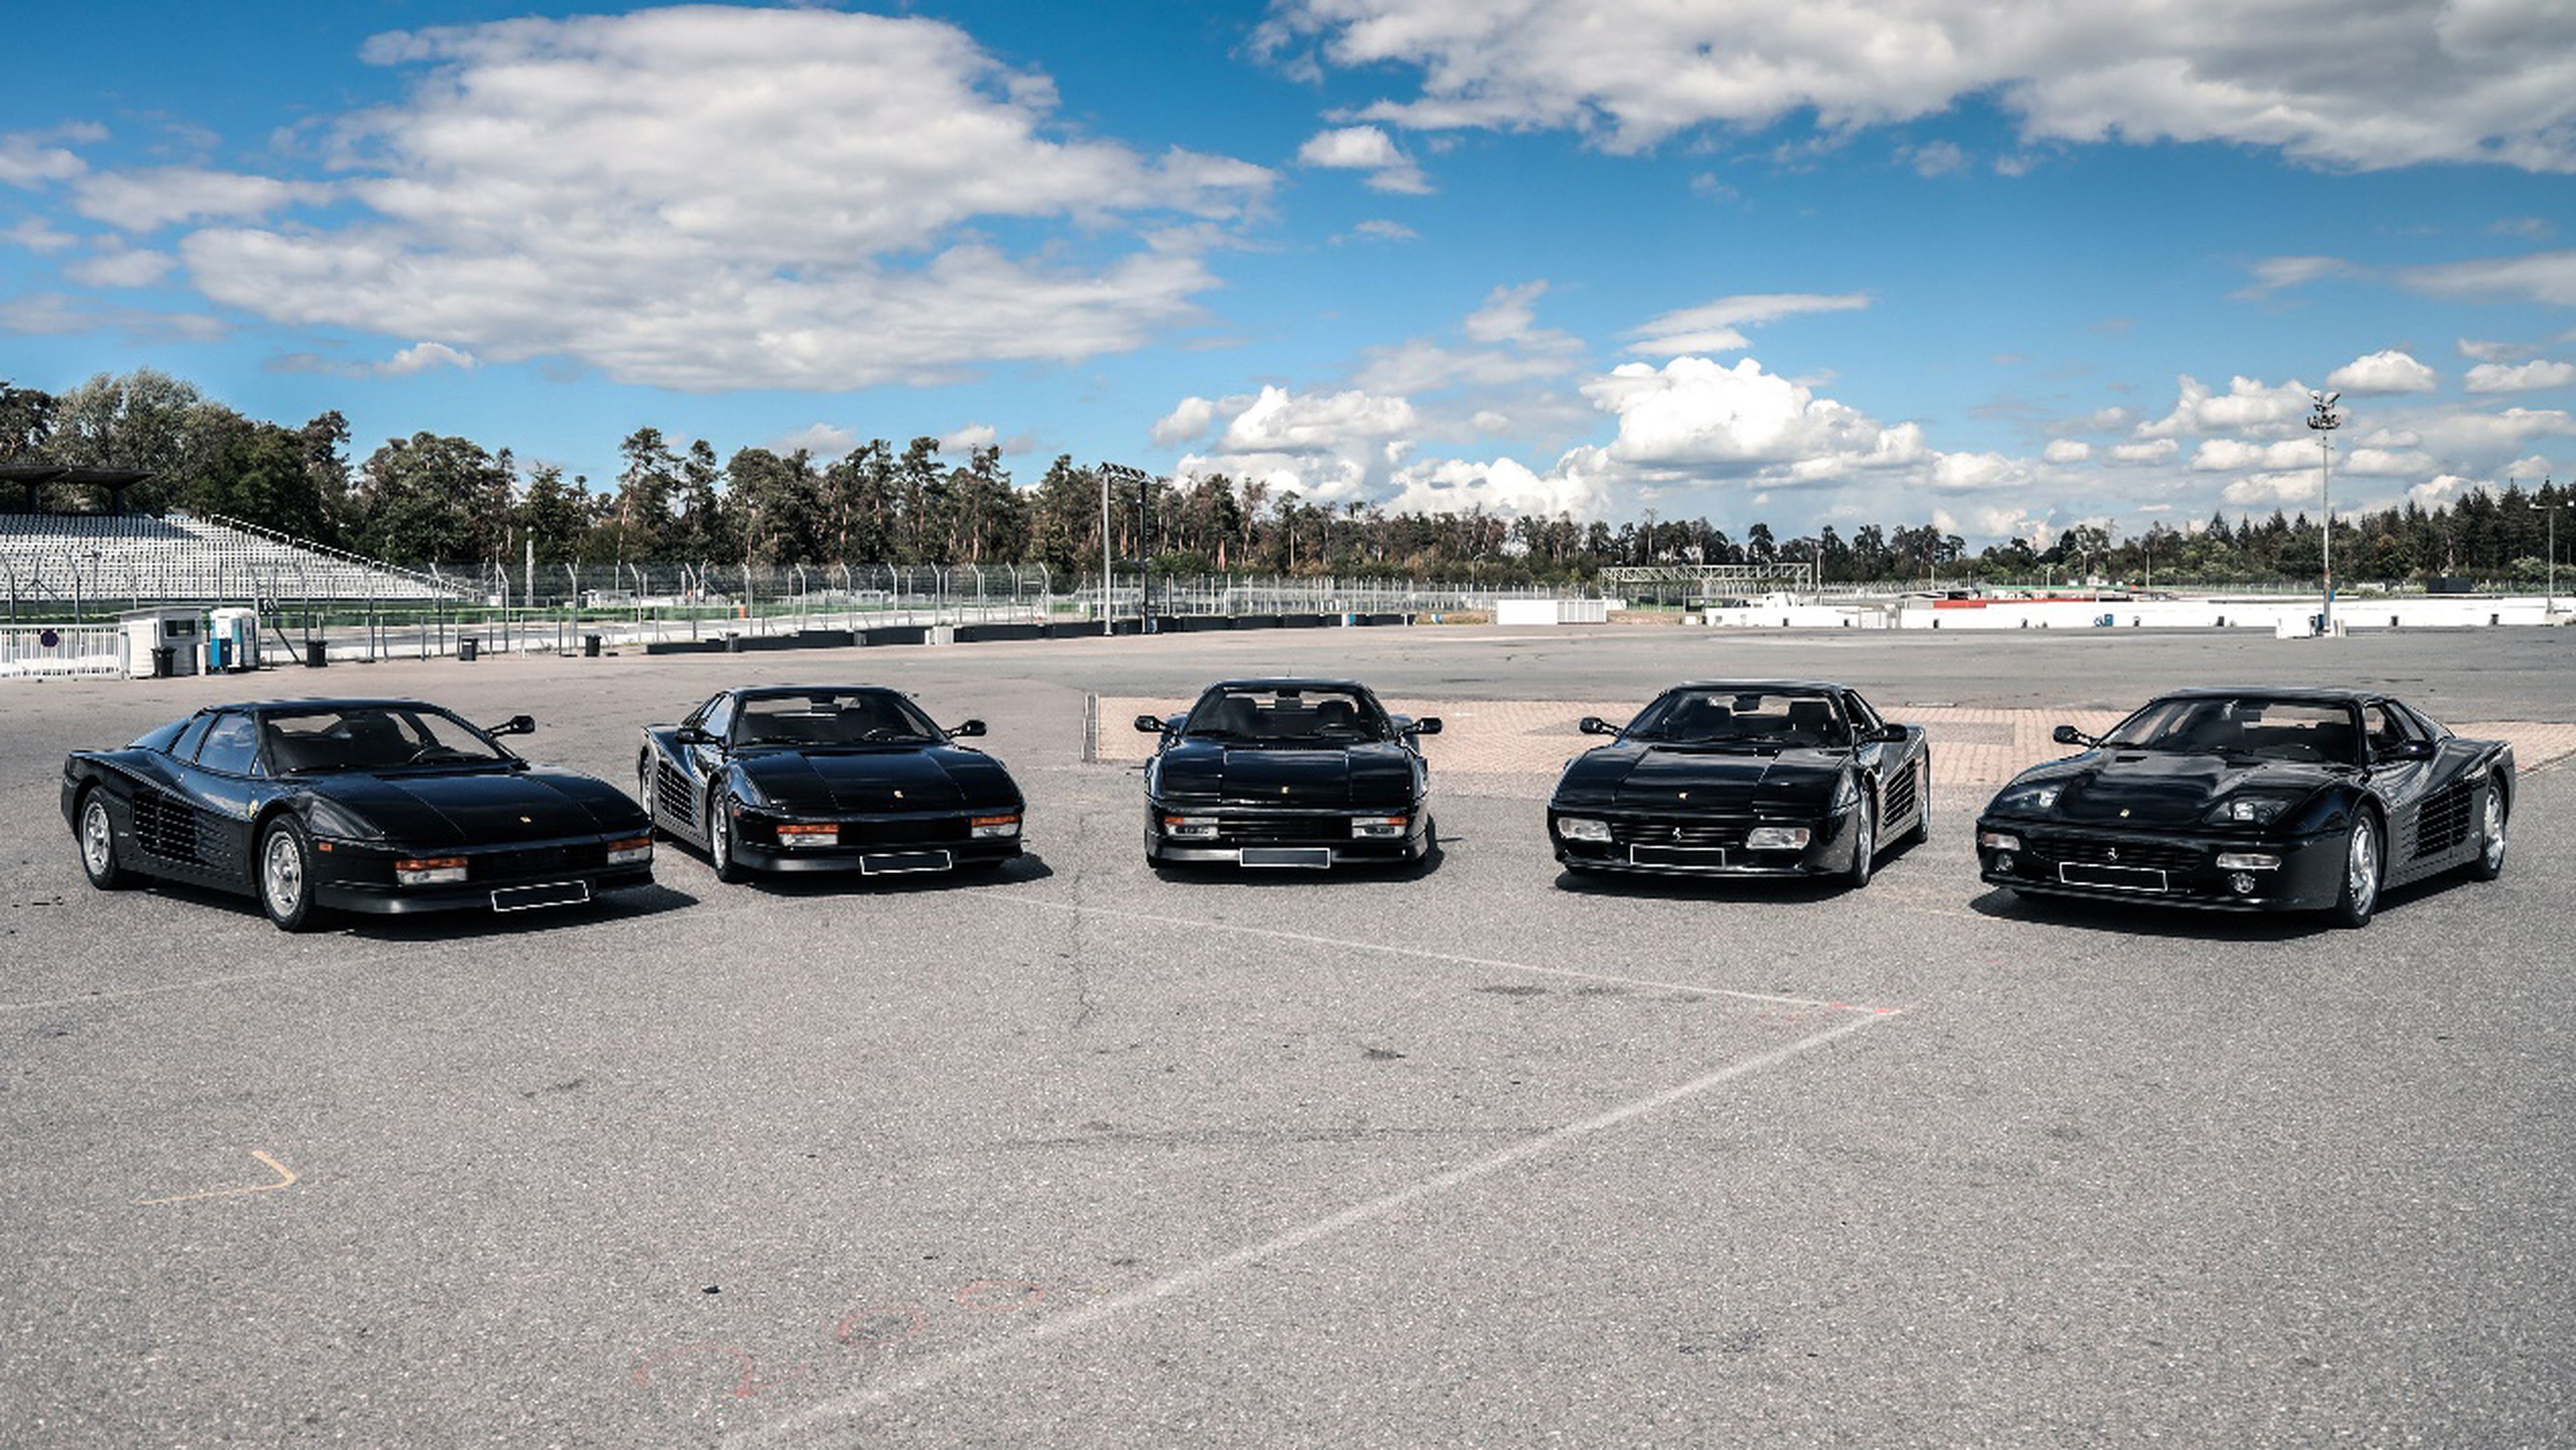 Cinco Ferrari Testarossa de color negro salen a subasta